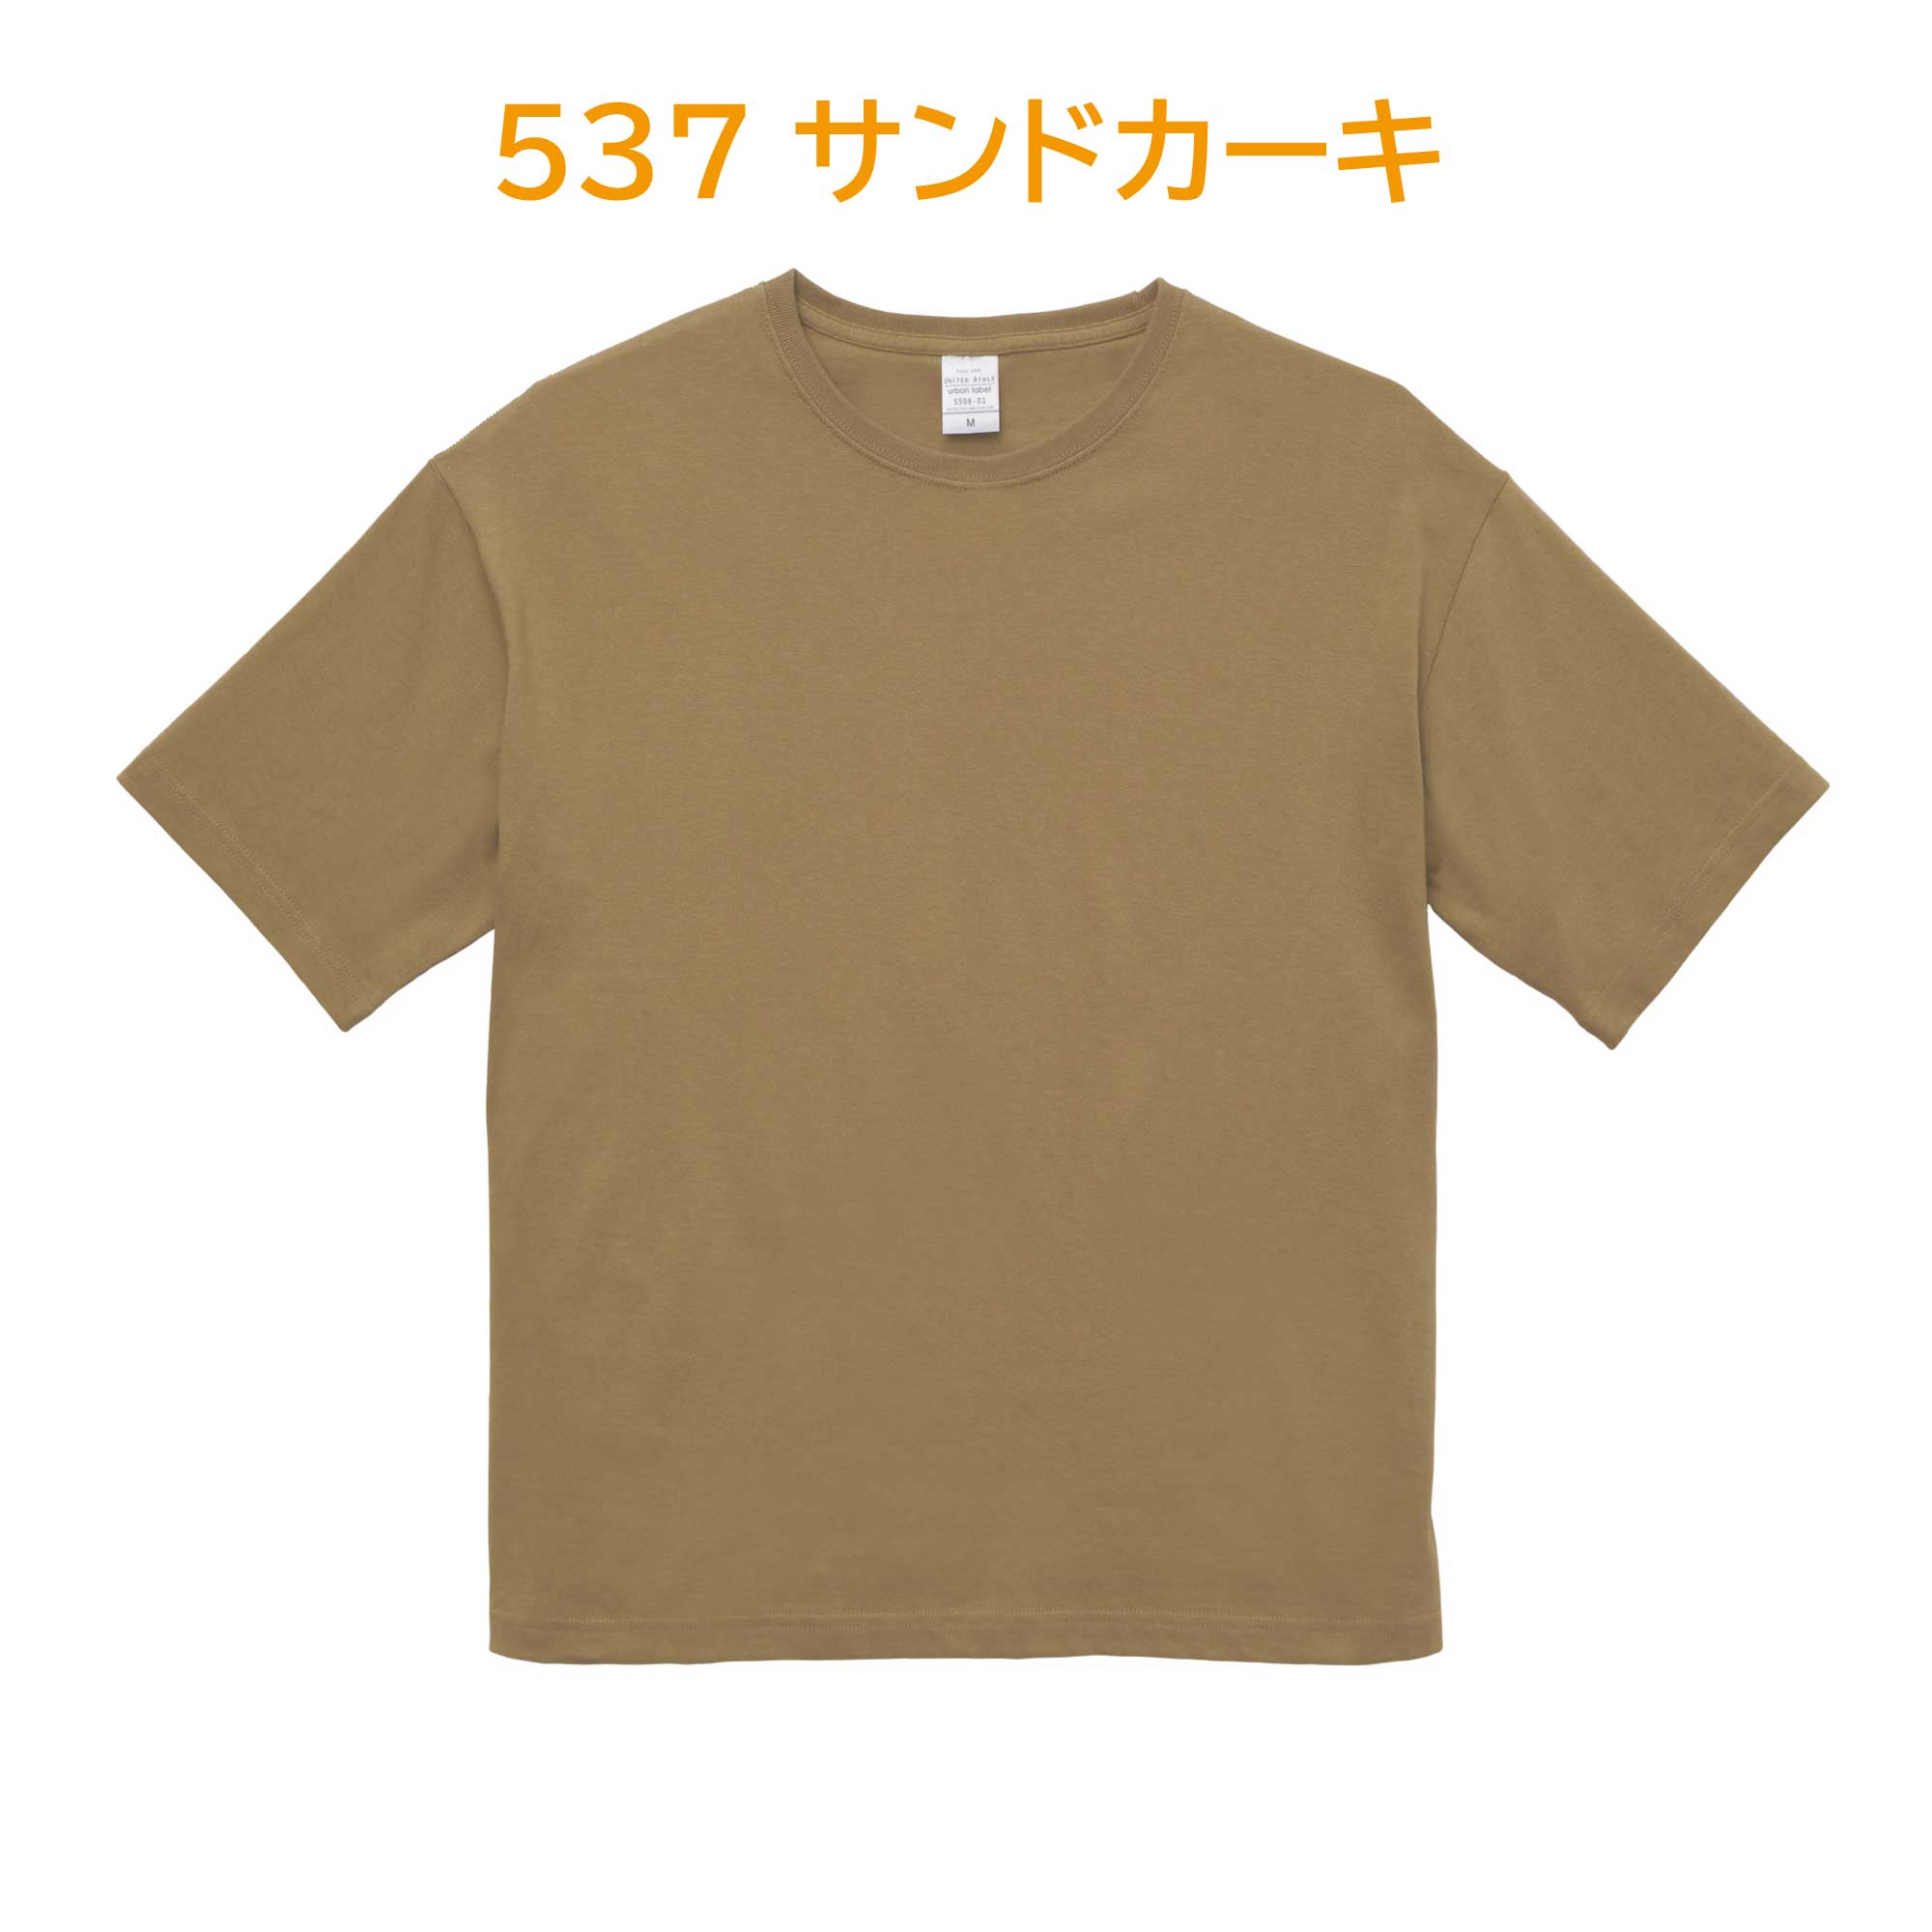 537-サンドカーキ